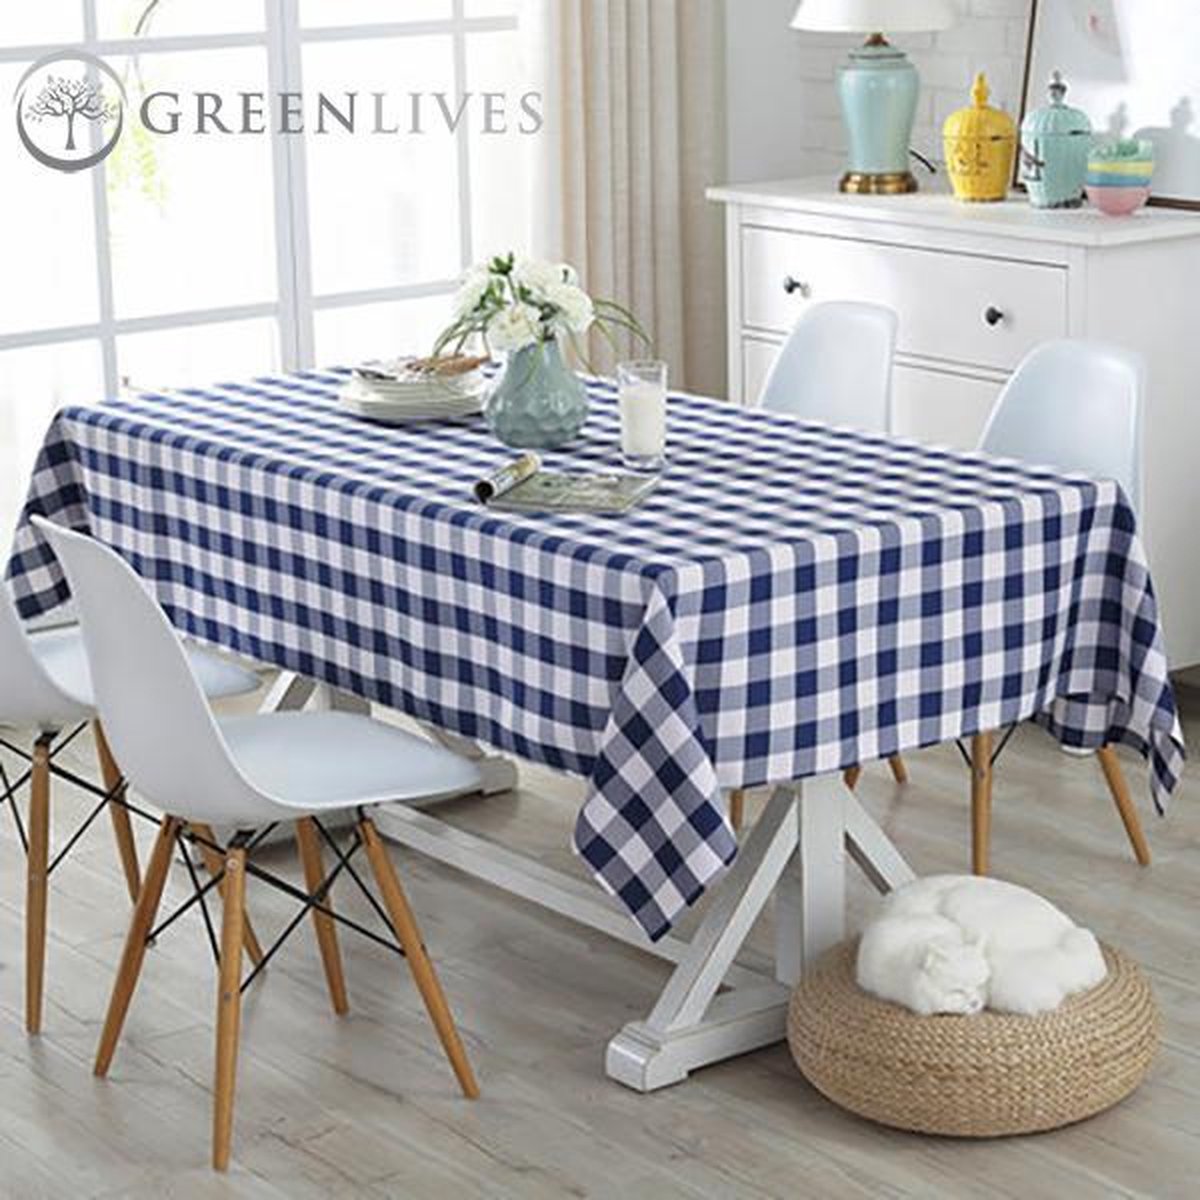 GreenLives - Luxe Tafelkleed Ruitje - 180 x 120 cm - Donker Blauw - 100% Polyester - Boerenbont tafelkleed - Water afstotend - Voor binnen en buiten!